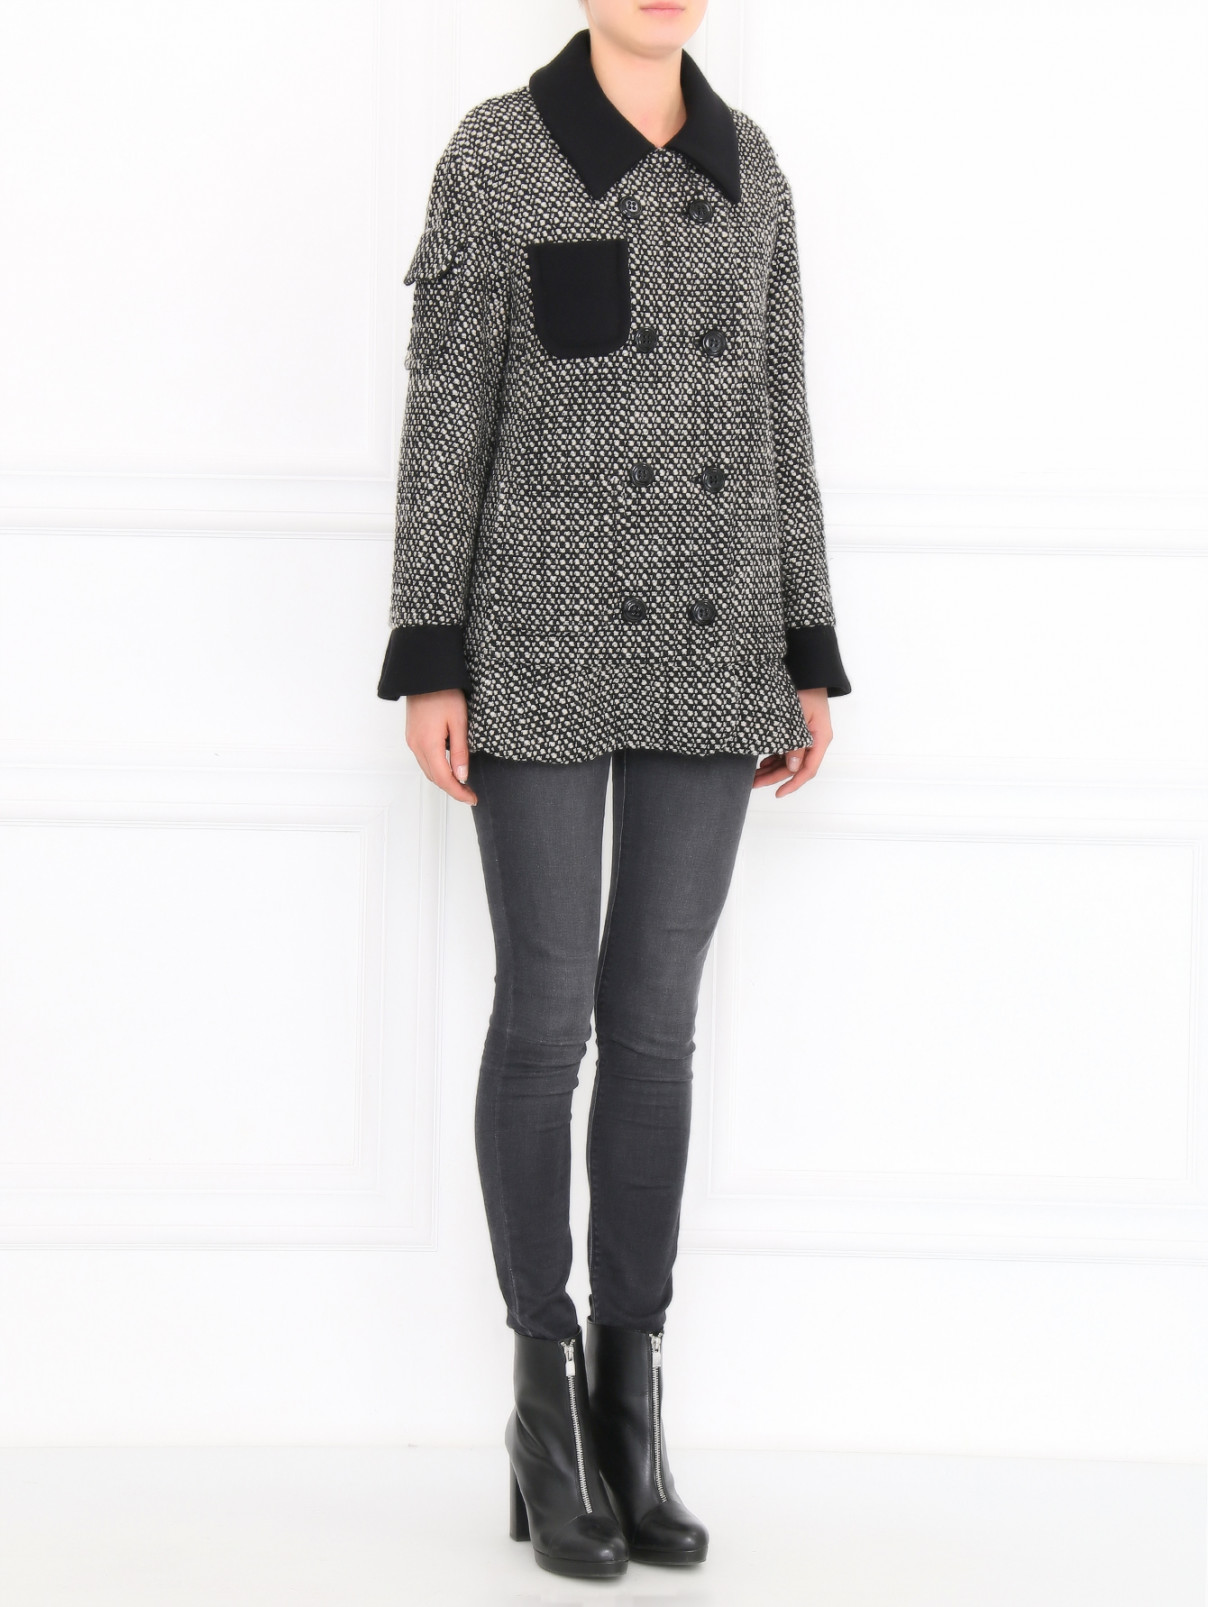 Пальто из шерсти с накладными карманами Moschino Cheap&Chic  –  Модель Общий вид  – Цвет:  Узор